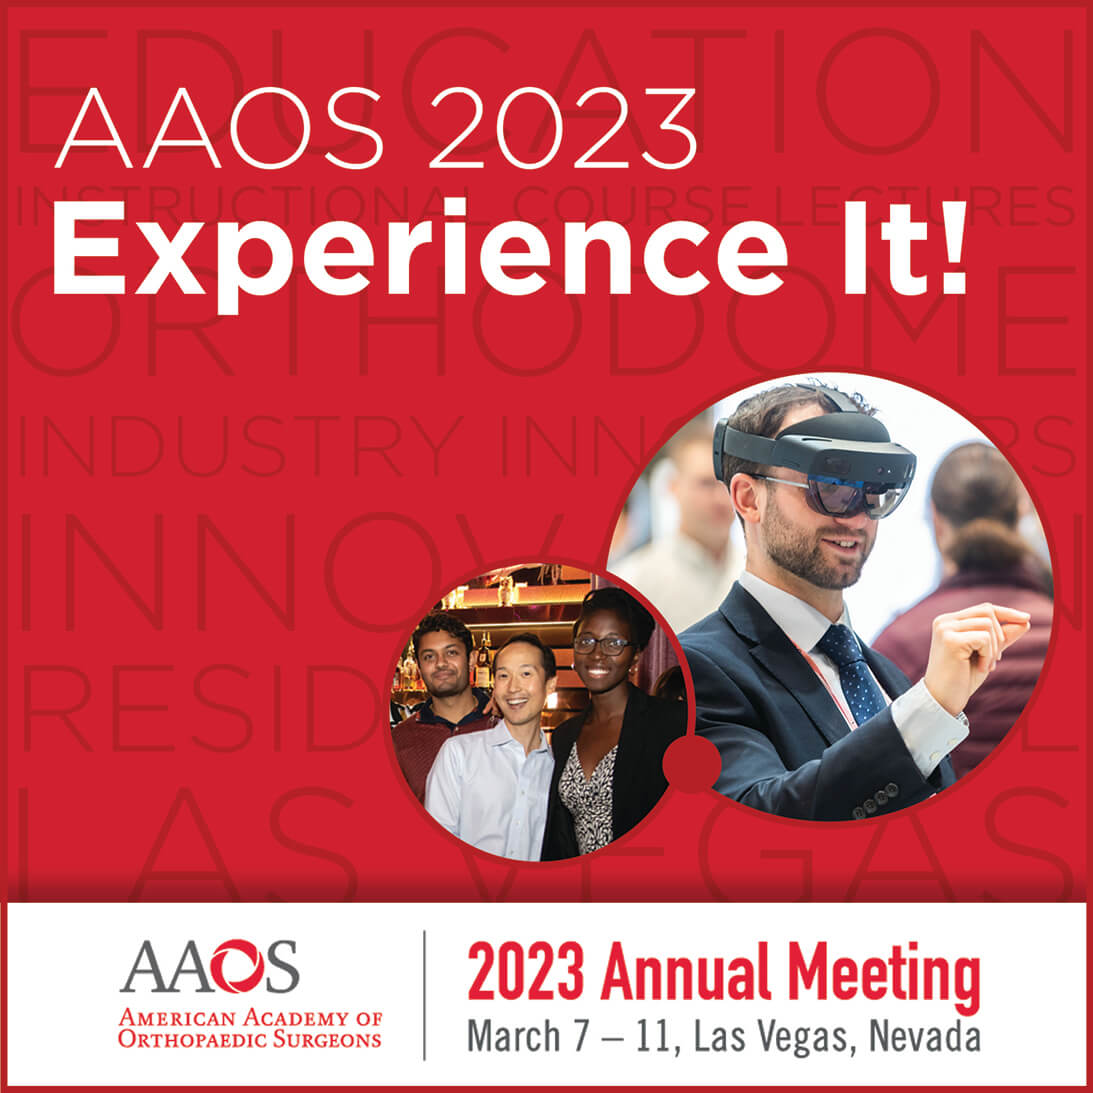 AAOS 2023 – AMERICAN ACADEMY OF ORTHOPAEDIC SURGEONS ANNUAL MEETING – LAS VEGAS